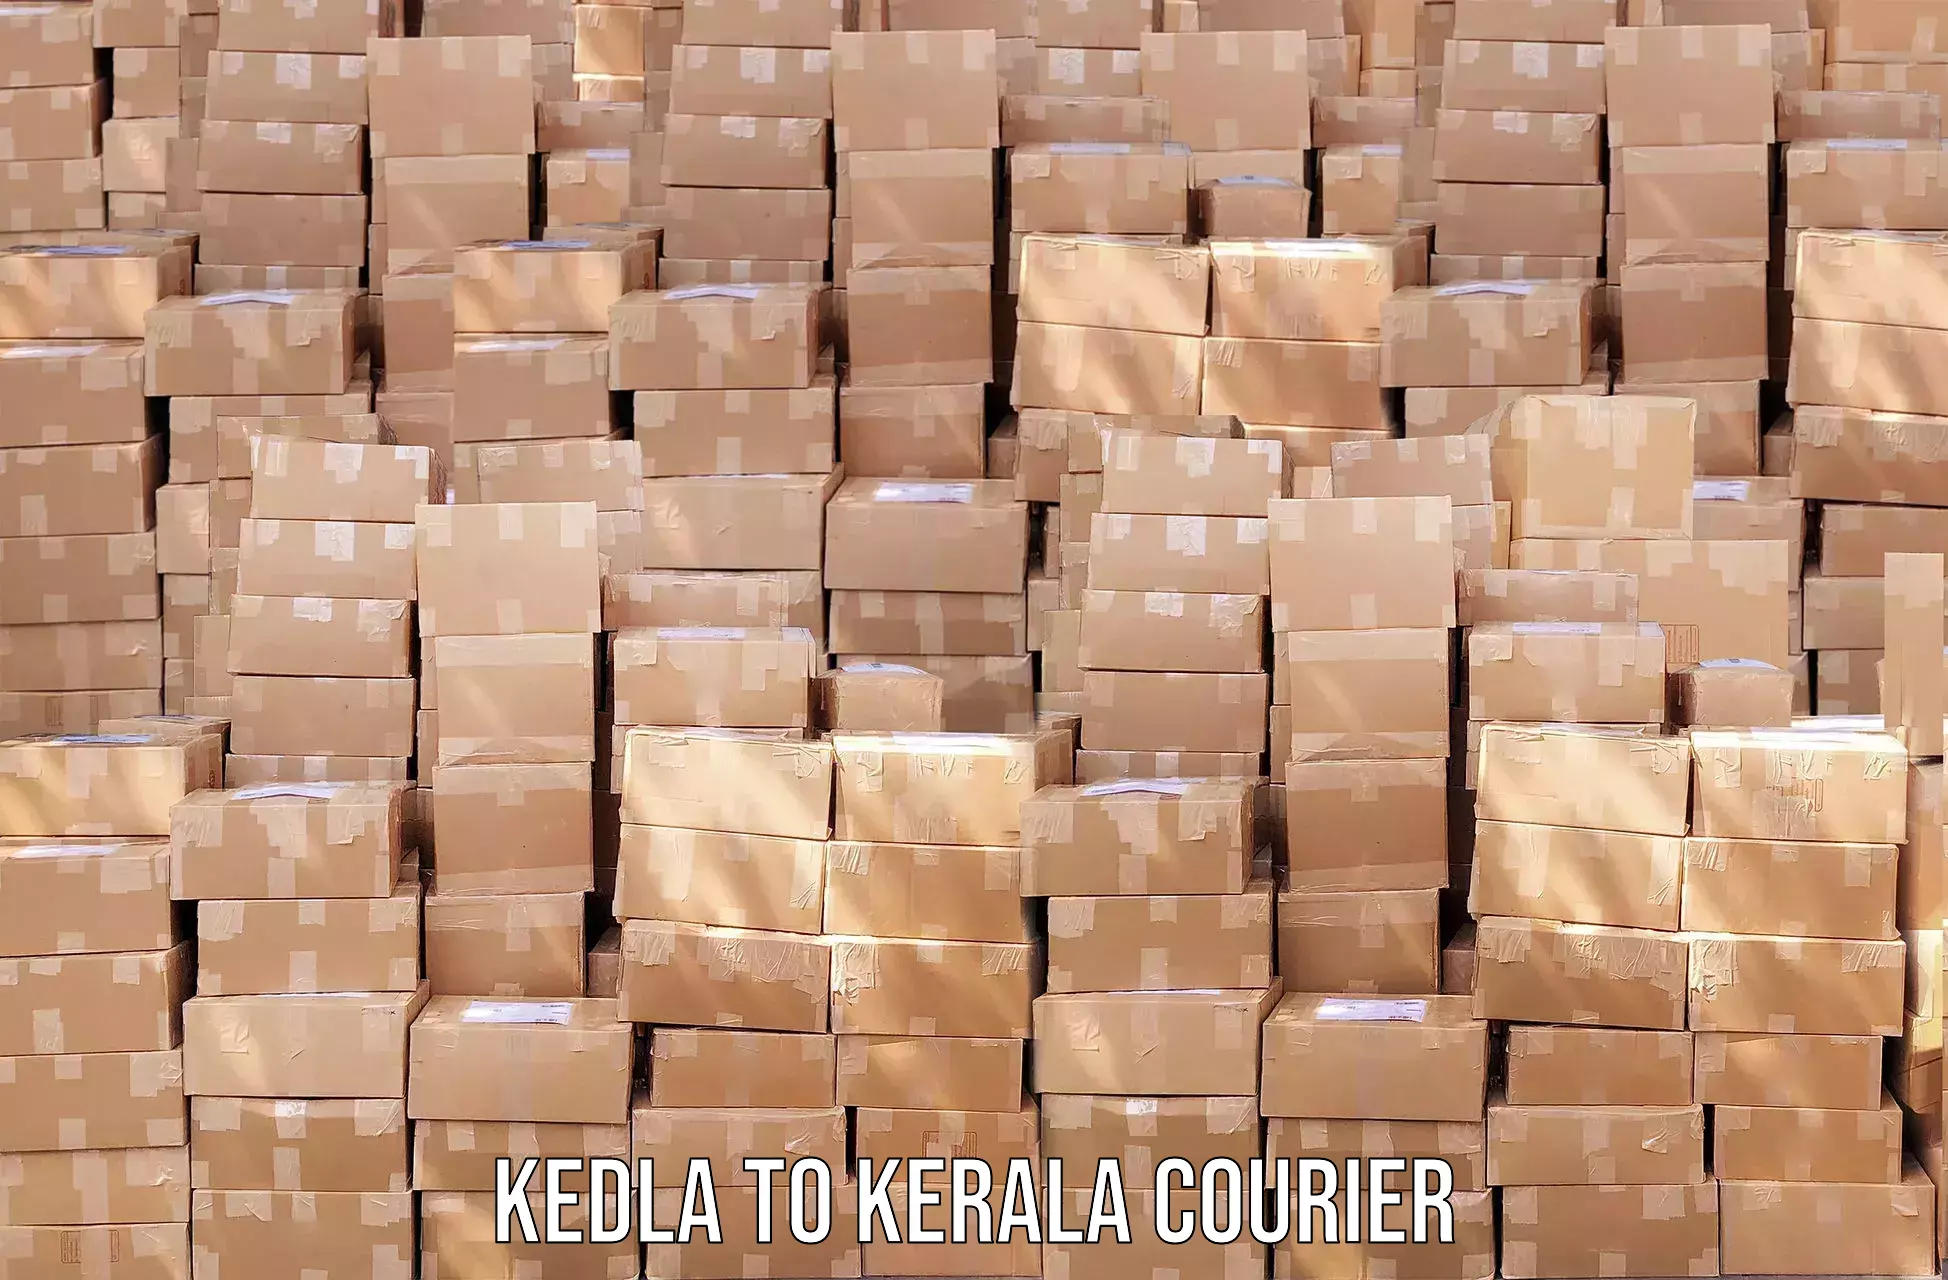 Efficient order fulfillment Kedla to Kannapuram